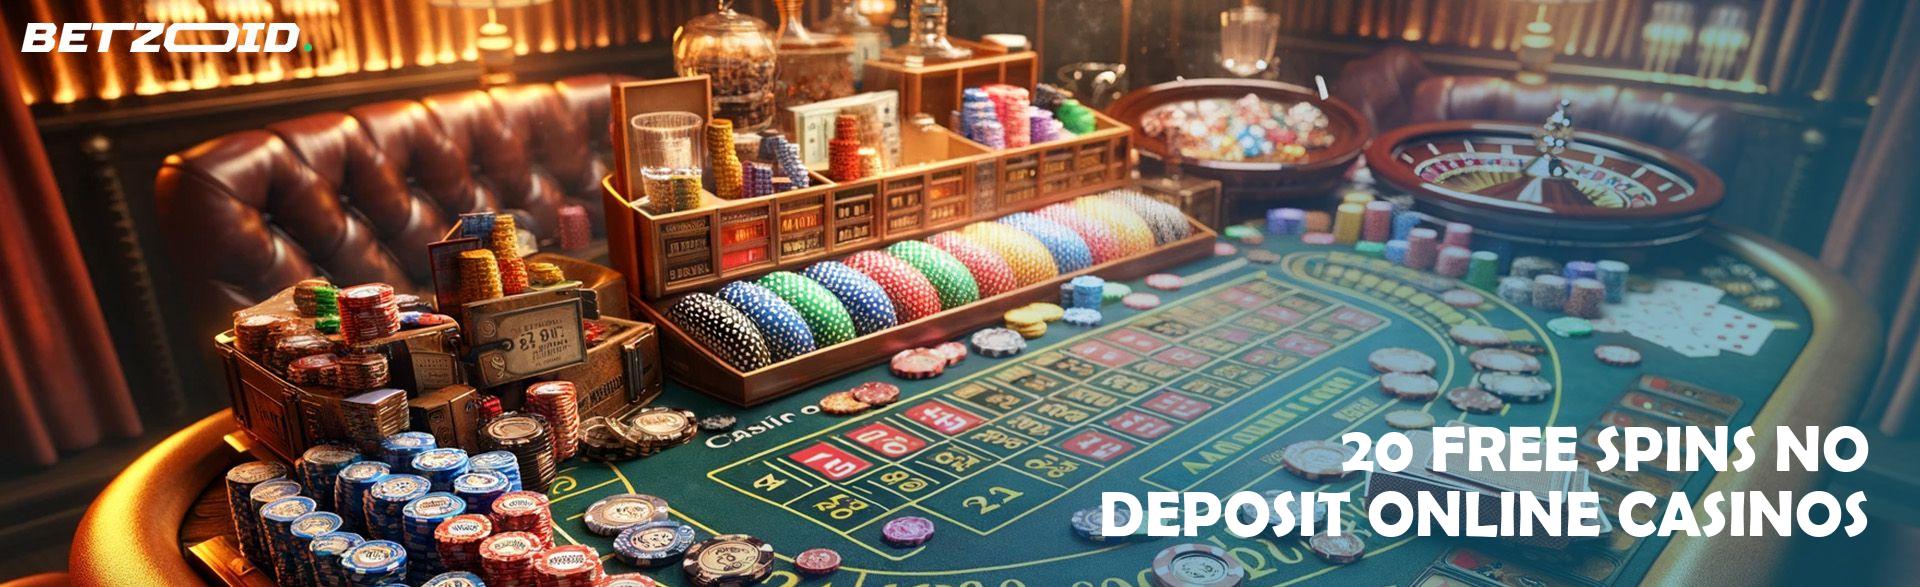 20 Free Spins No Deposit Online Casinos.